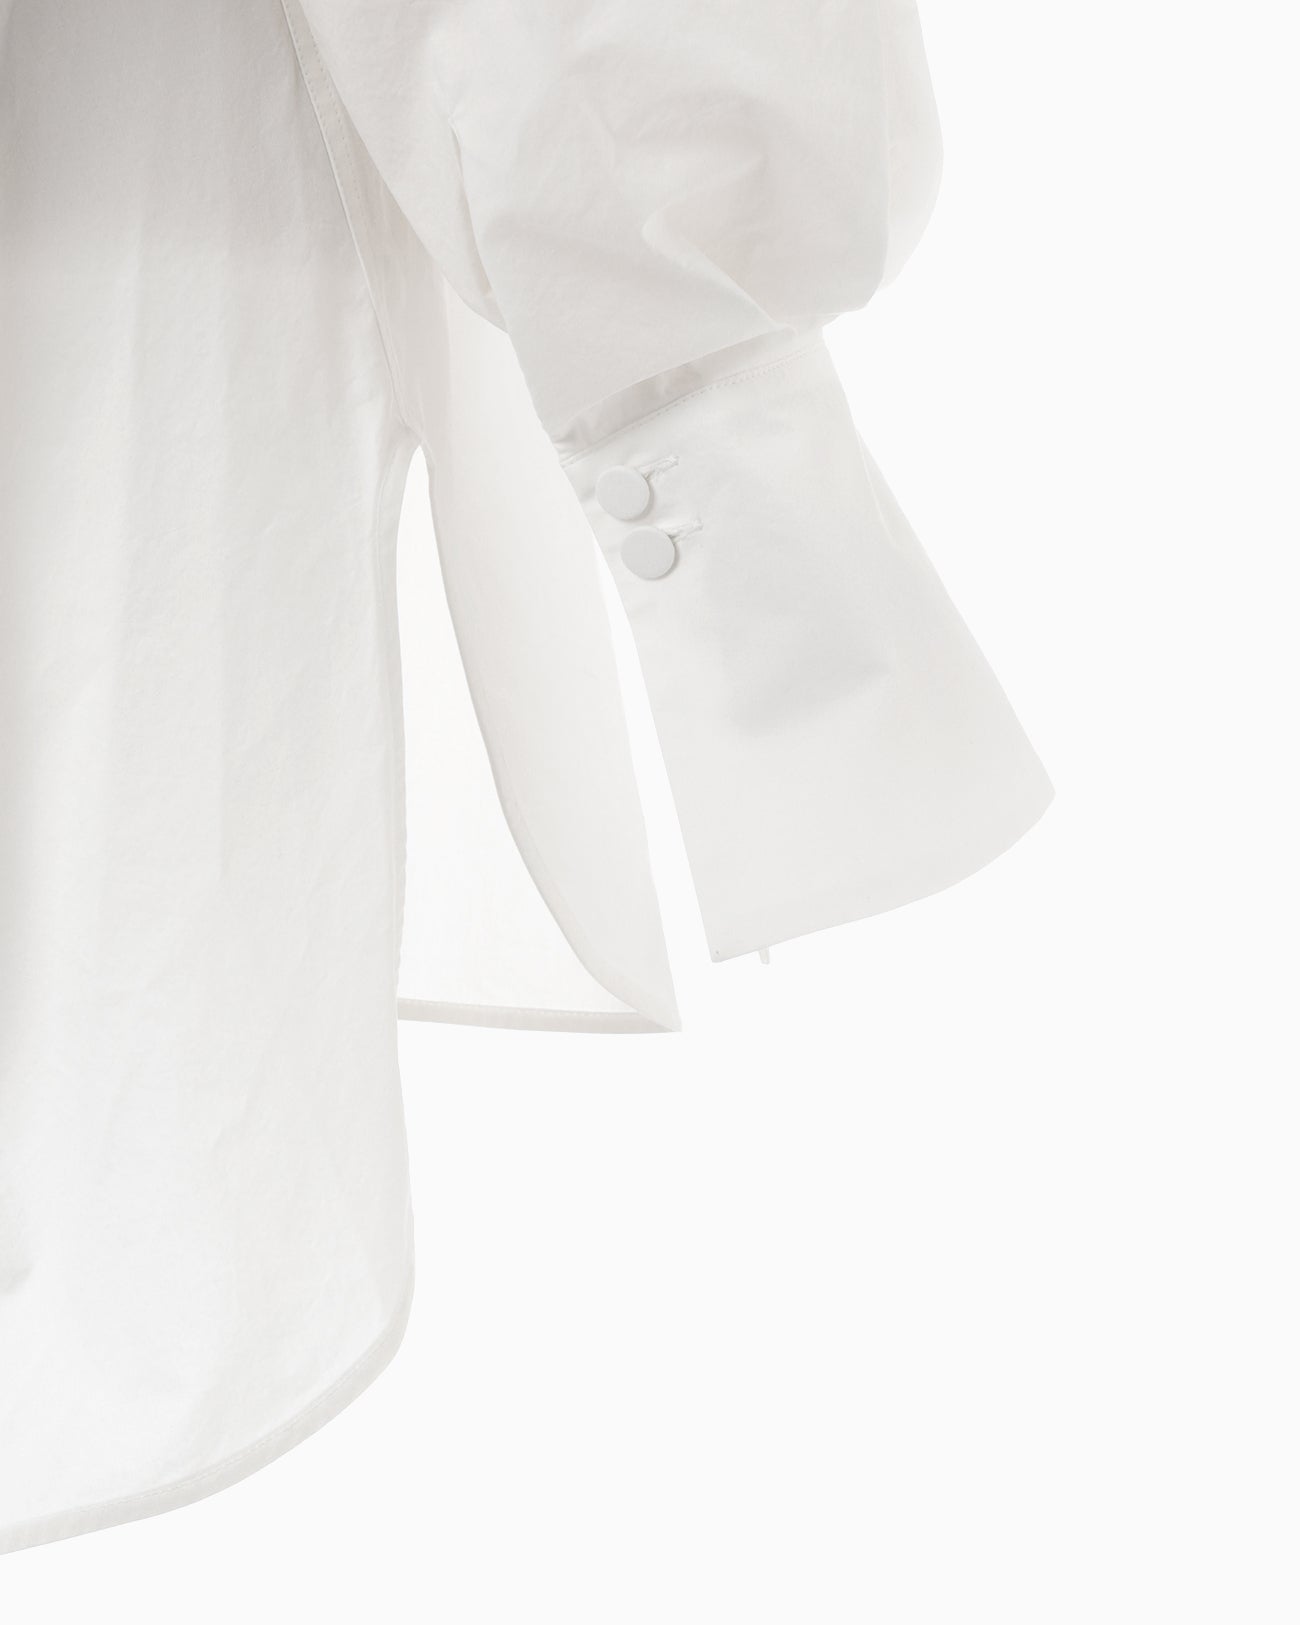 Nidom Cotton Oversized Shirt - white - Mame Kurogouchi